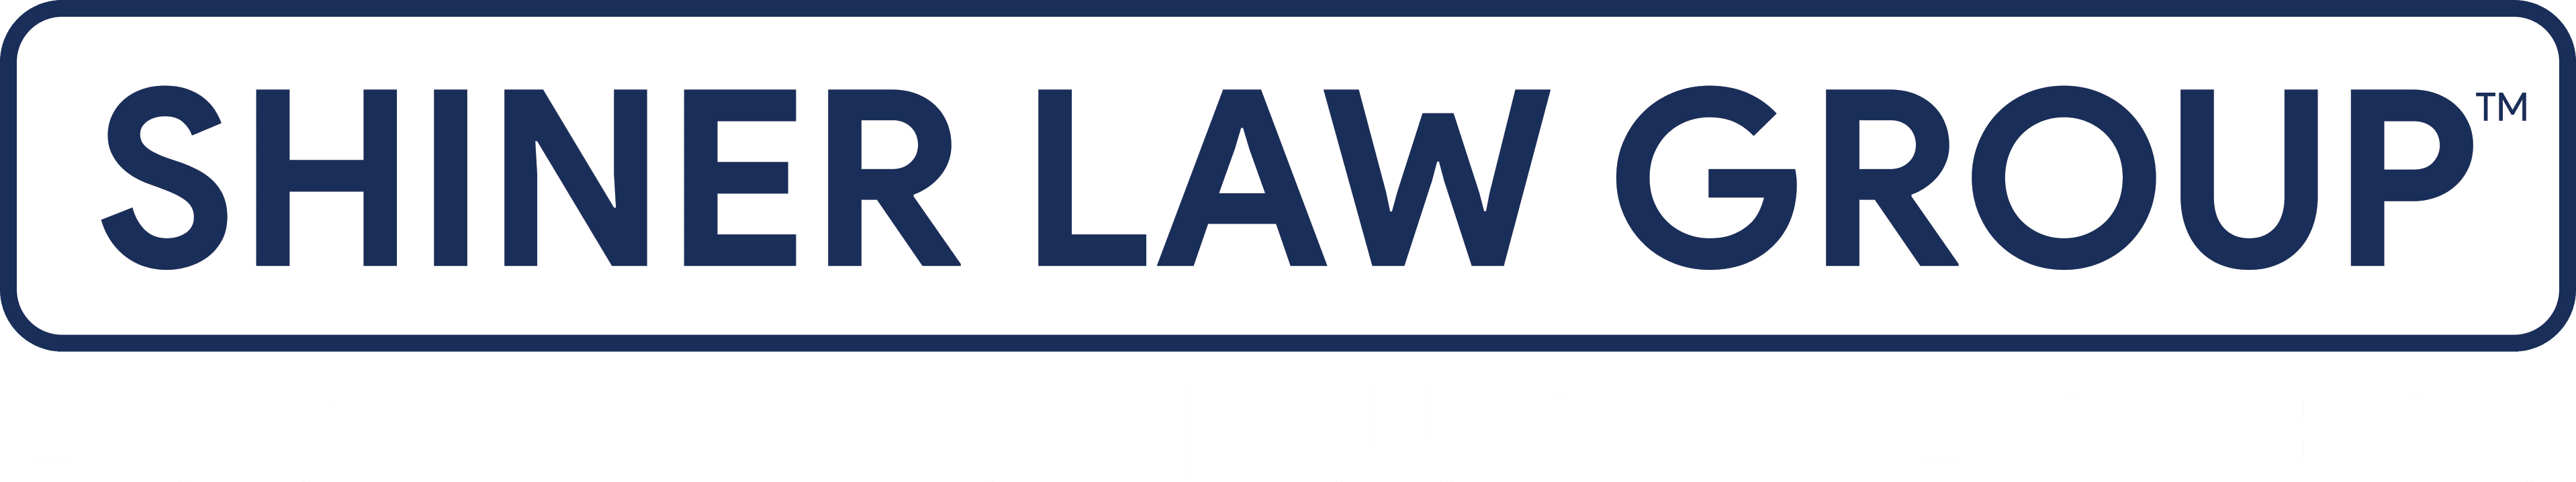 Shiner Law Group Logo Light